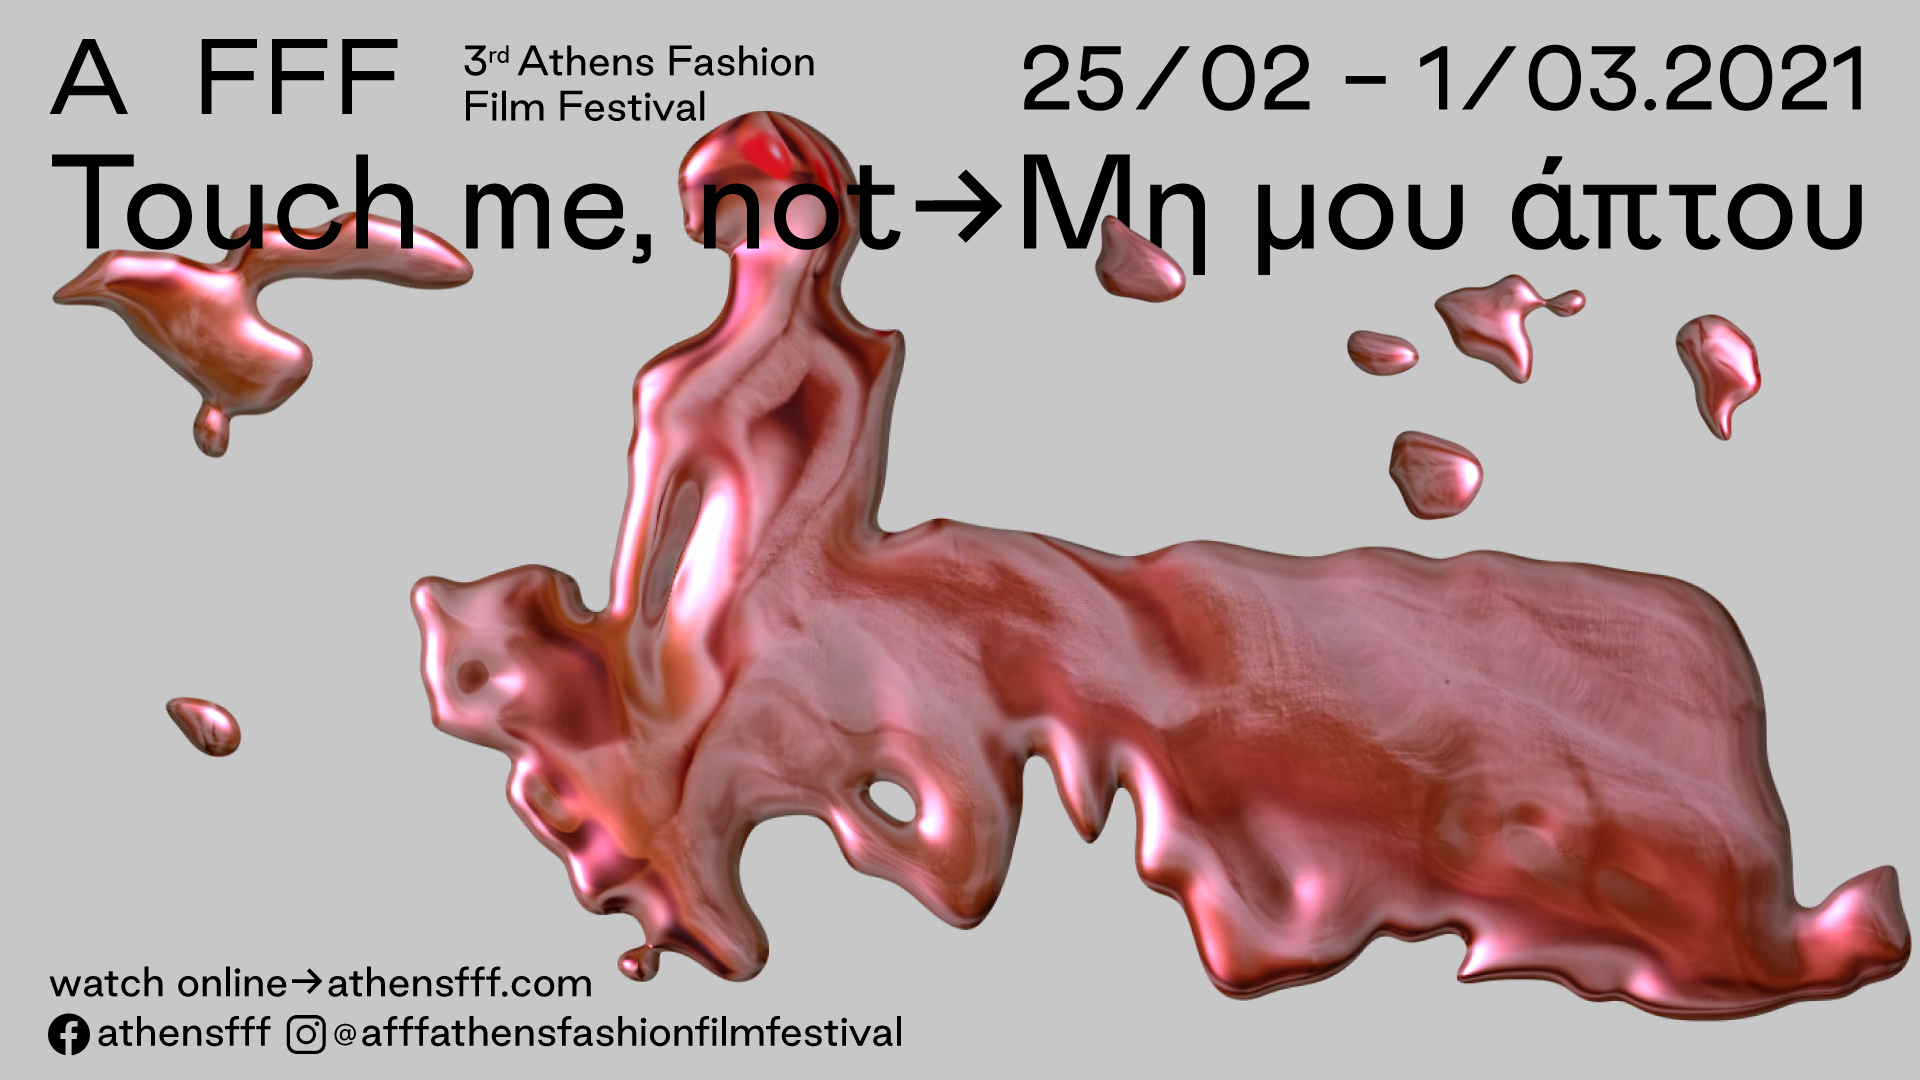 Κάτι σε φεστιβάλ παιδιά; 3ο Athens Fashion Film Festival – Touch me, not – Μη μου άπτου”